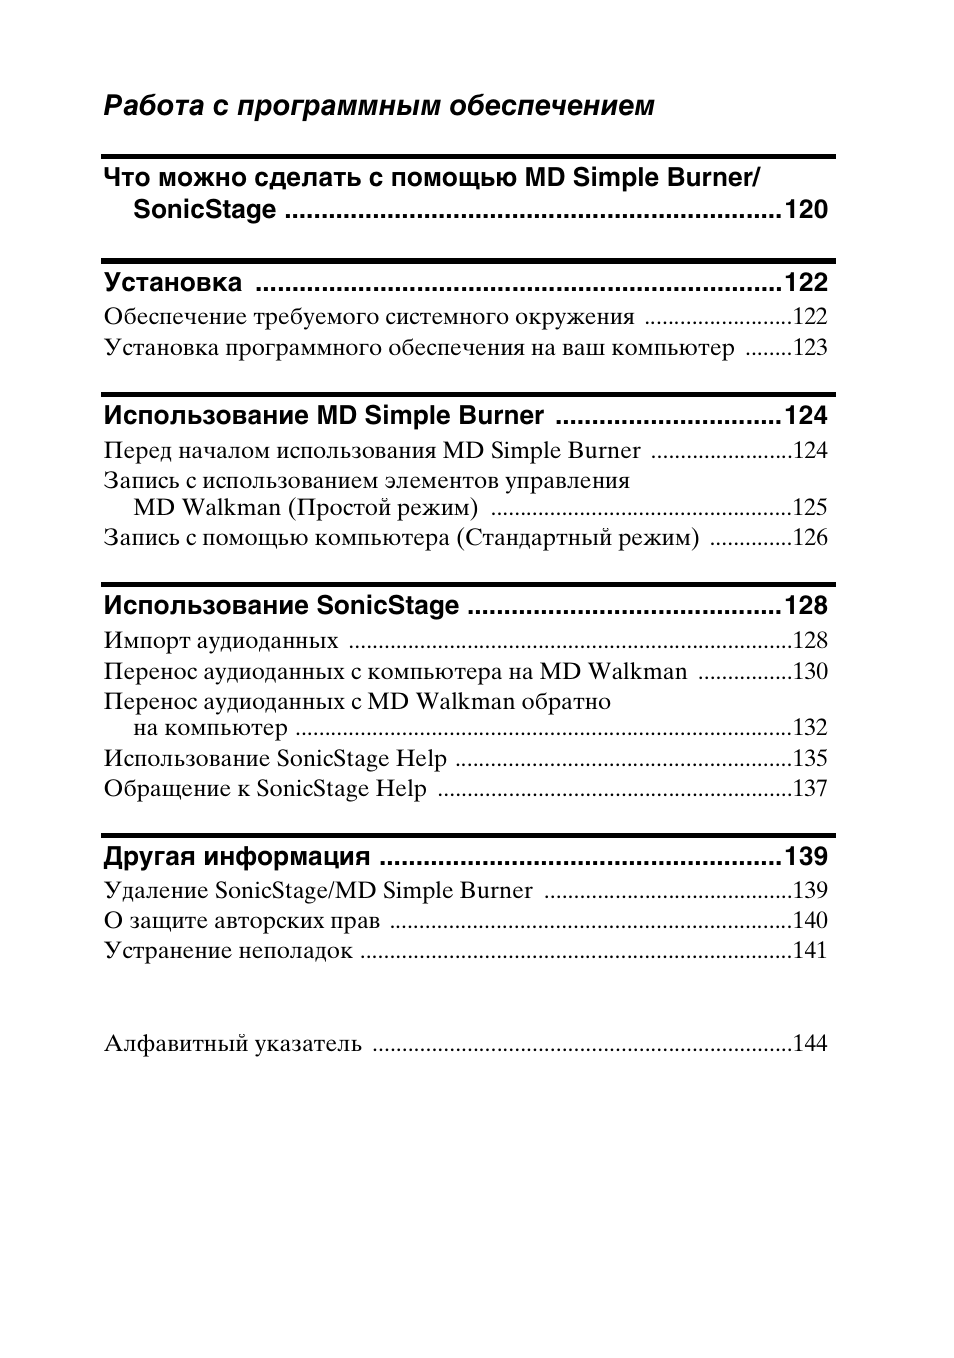 Работа с программным обеспечением | Инструкция по эксплуатации Sony MZ-NH900 | Страница 7 / 148